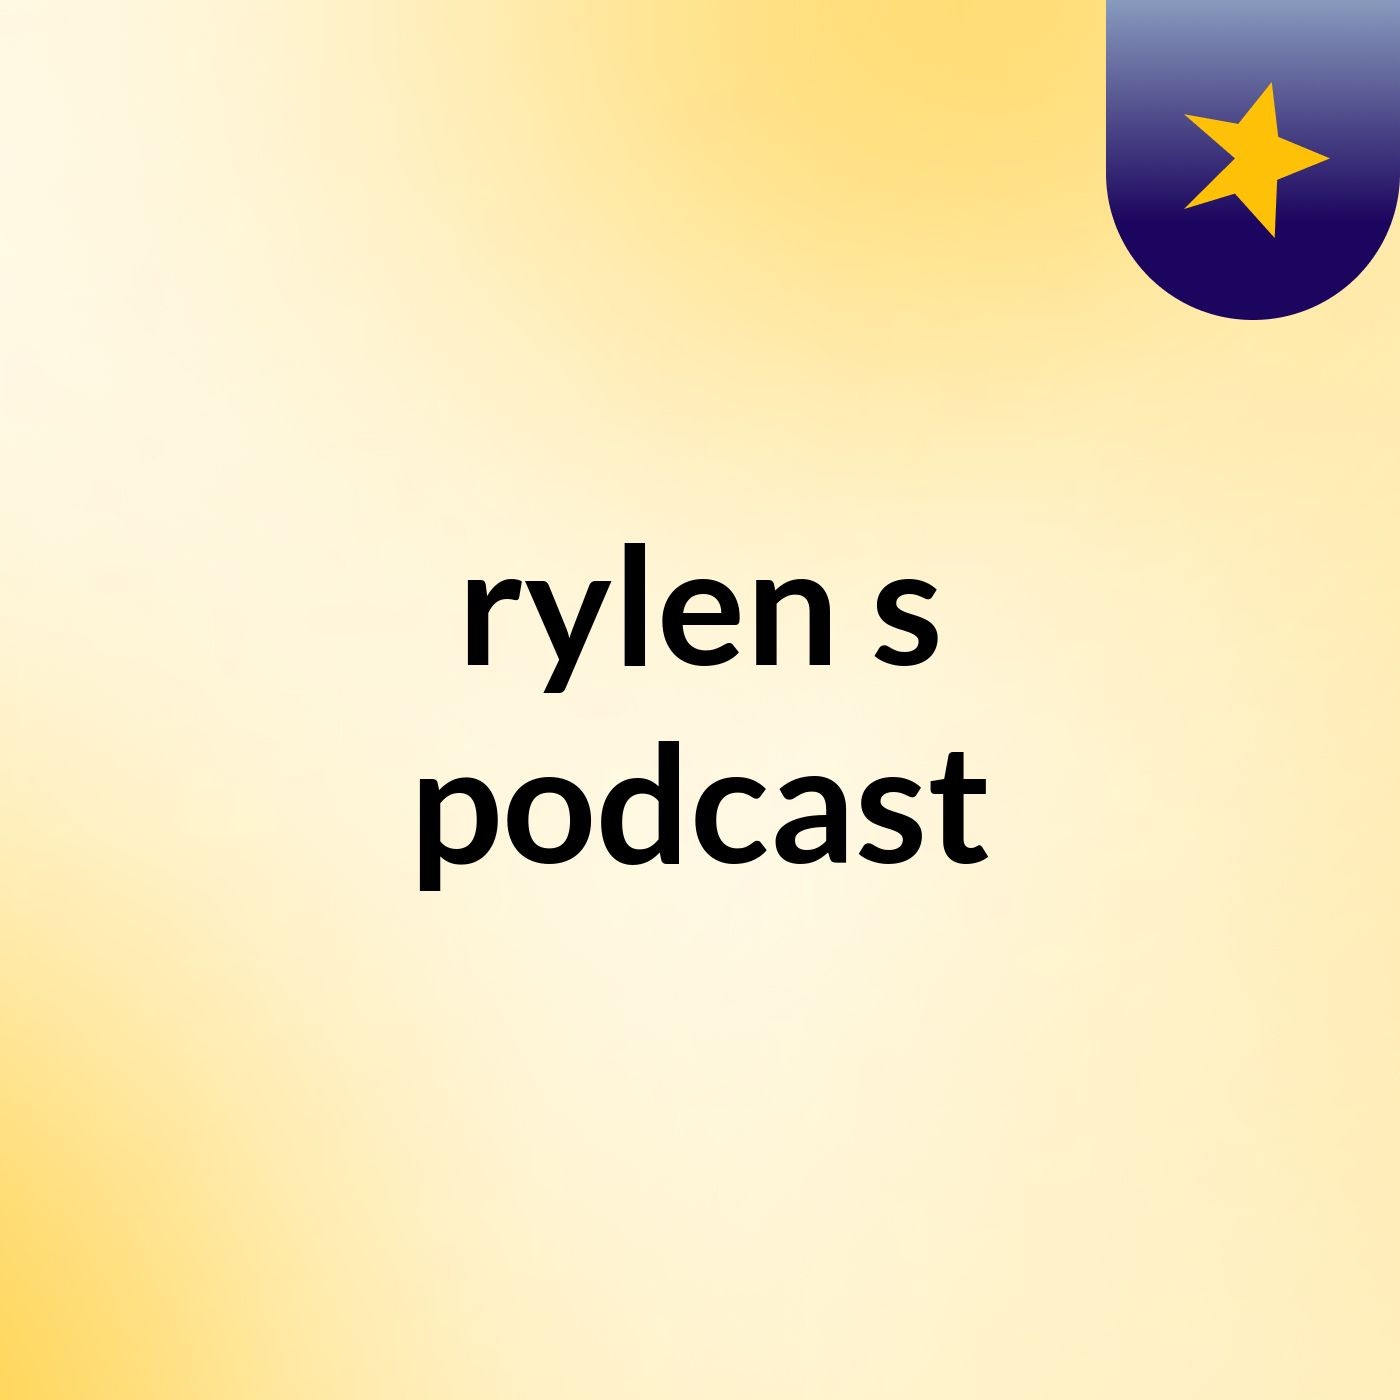 Episode 2 - rylen's podcast